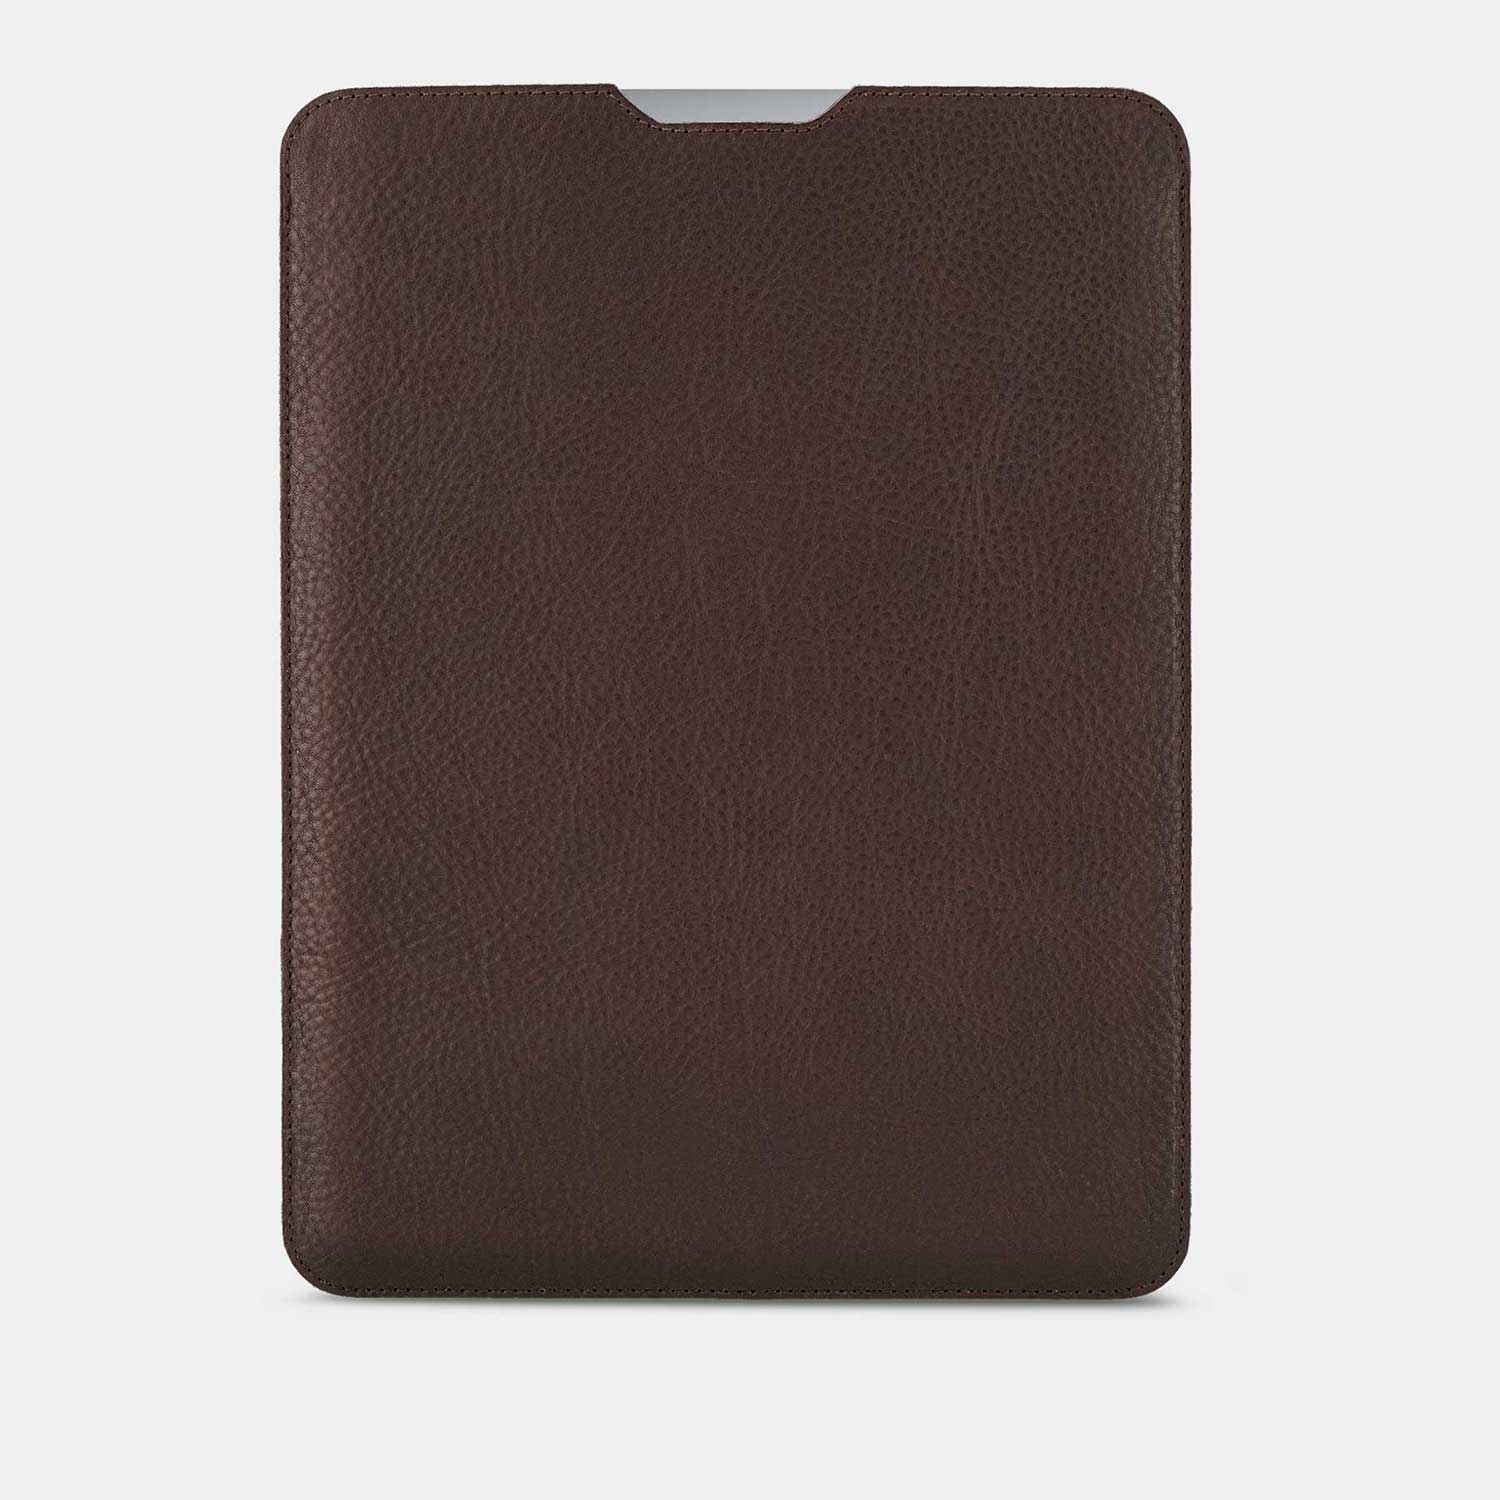 MacBook Sleeve HENRY in der Farbe chocolate von Goodwilhelm